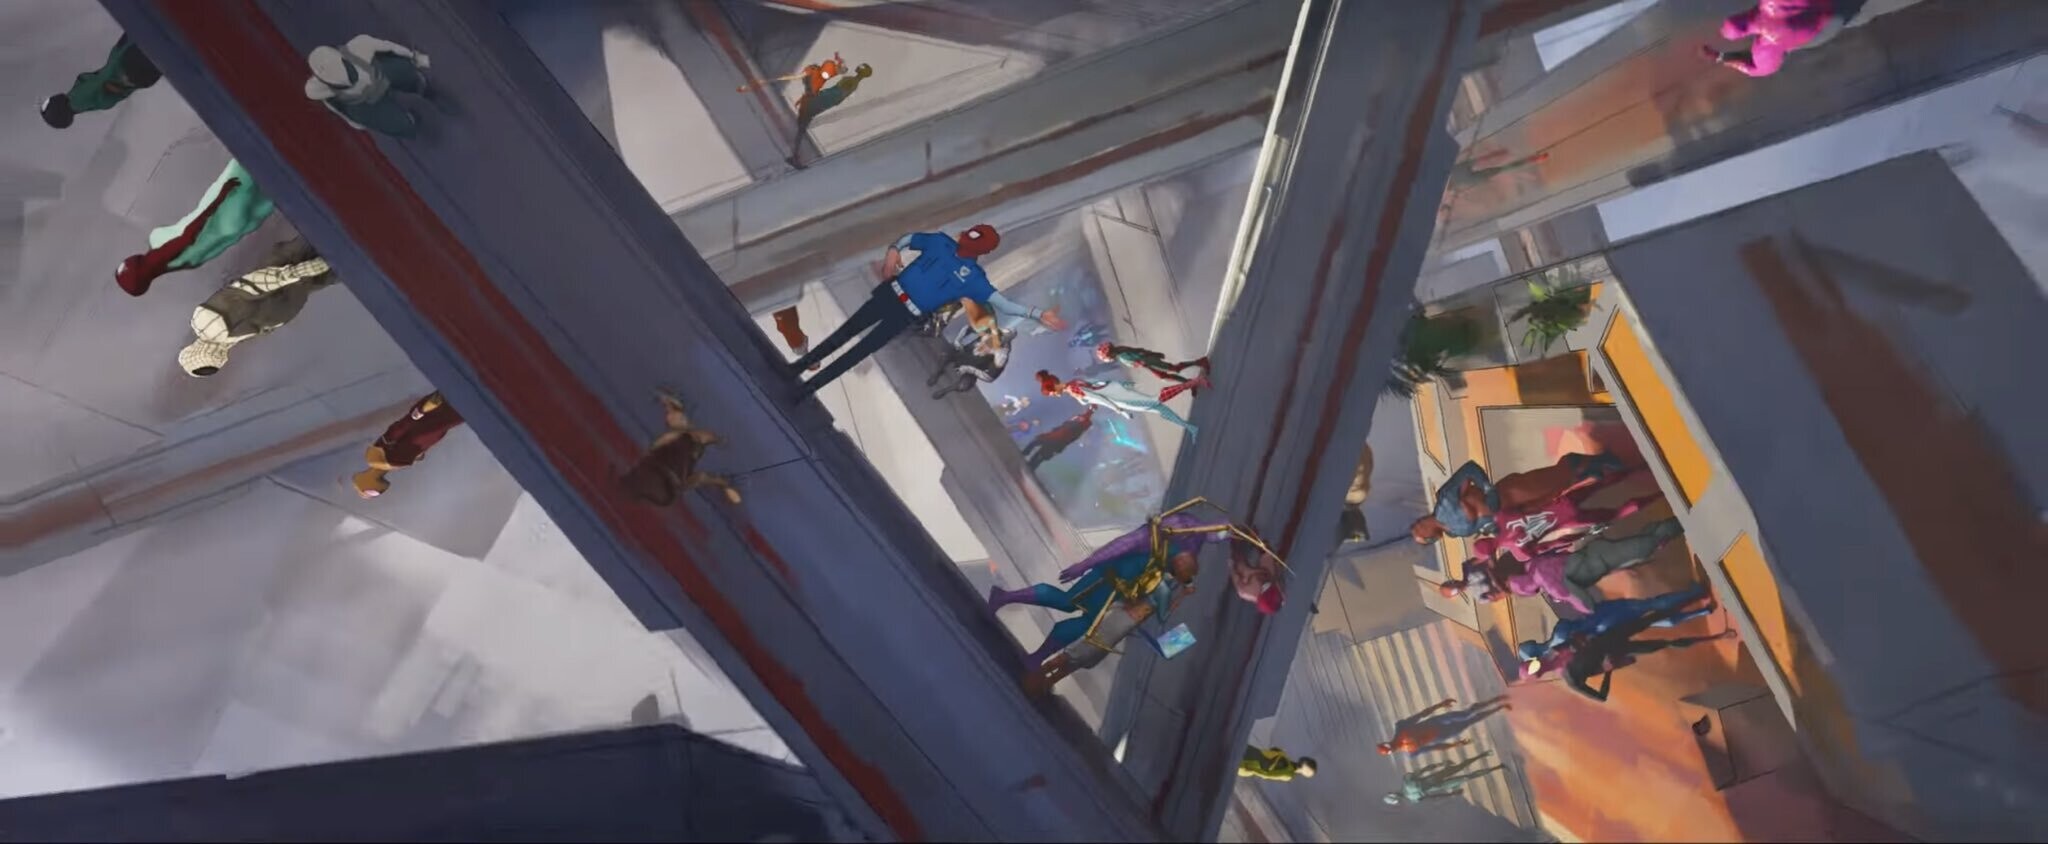 Галерея Какие Пауки появились в трейлере мультфильма «Человек-паук: Через вселенные 2» - 4 фото